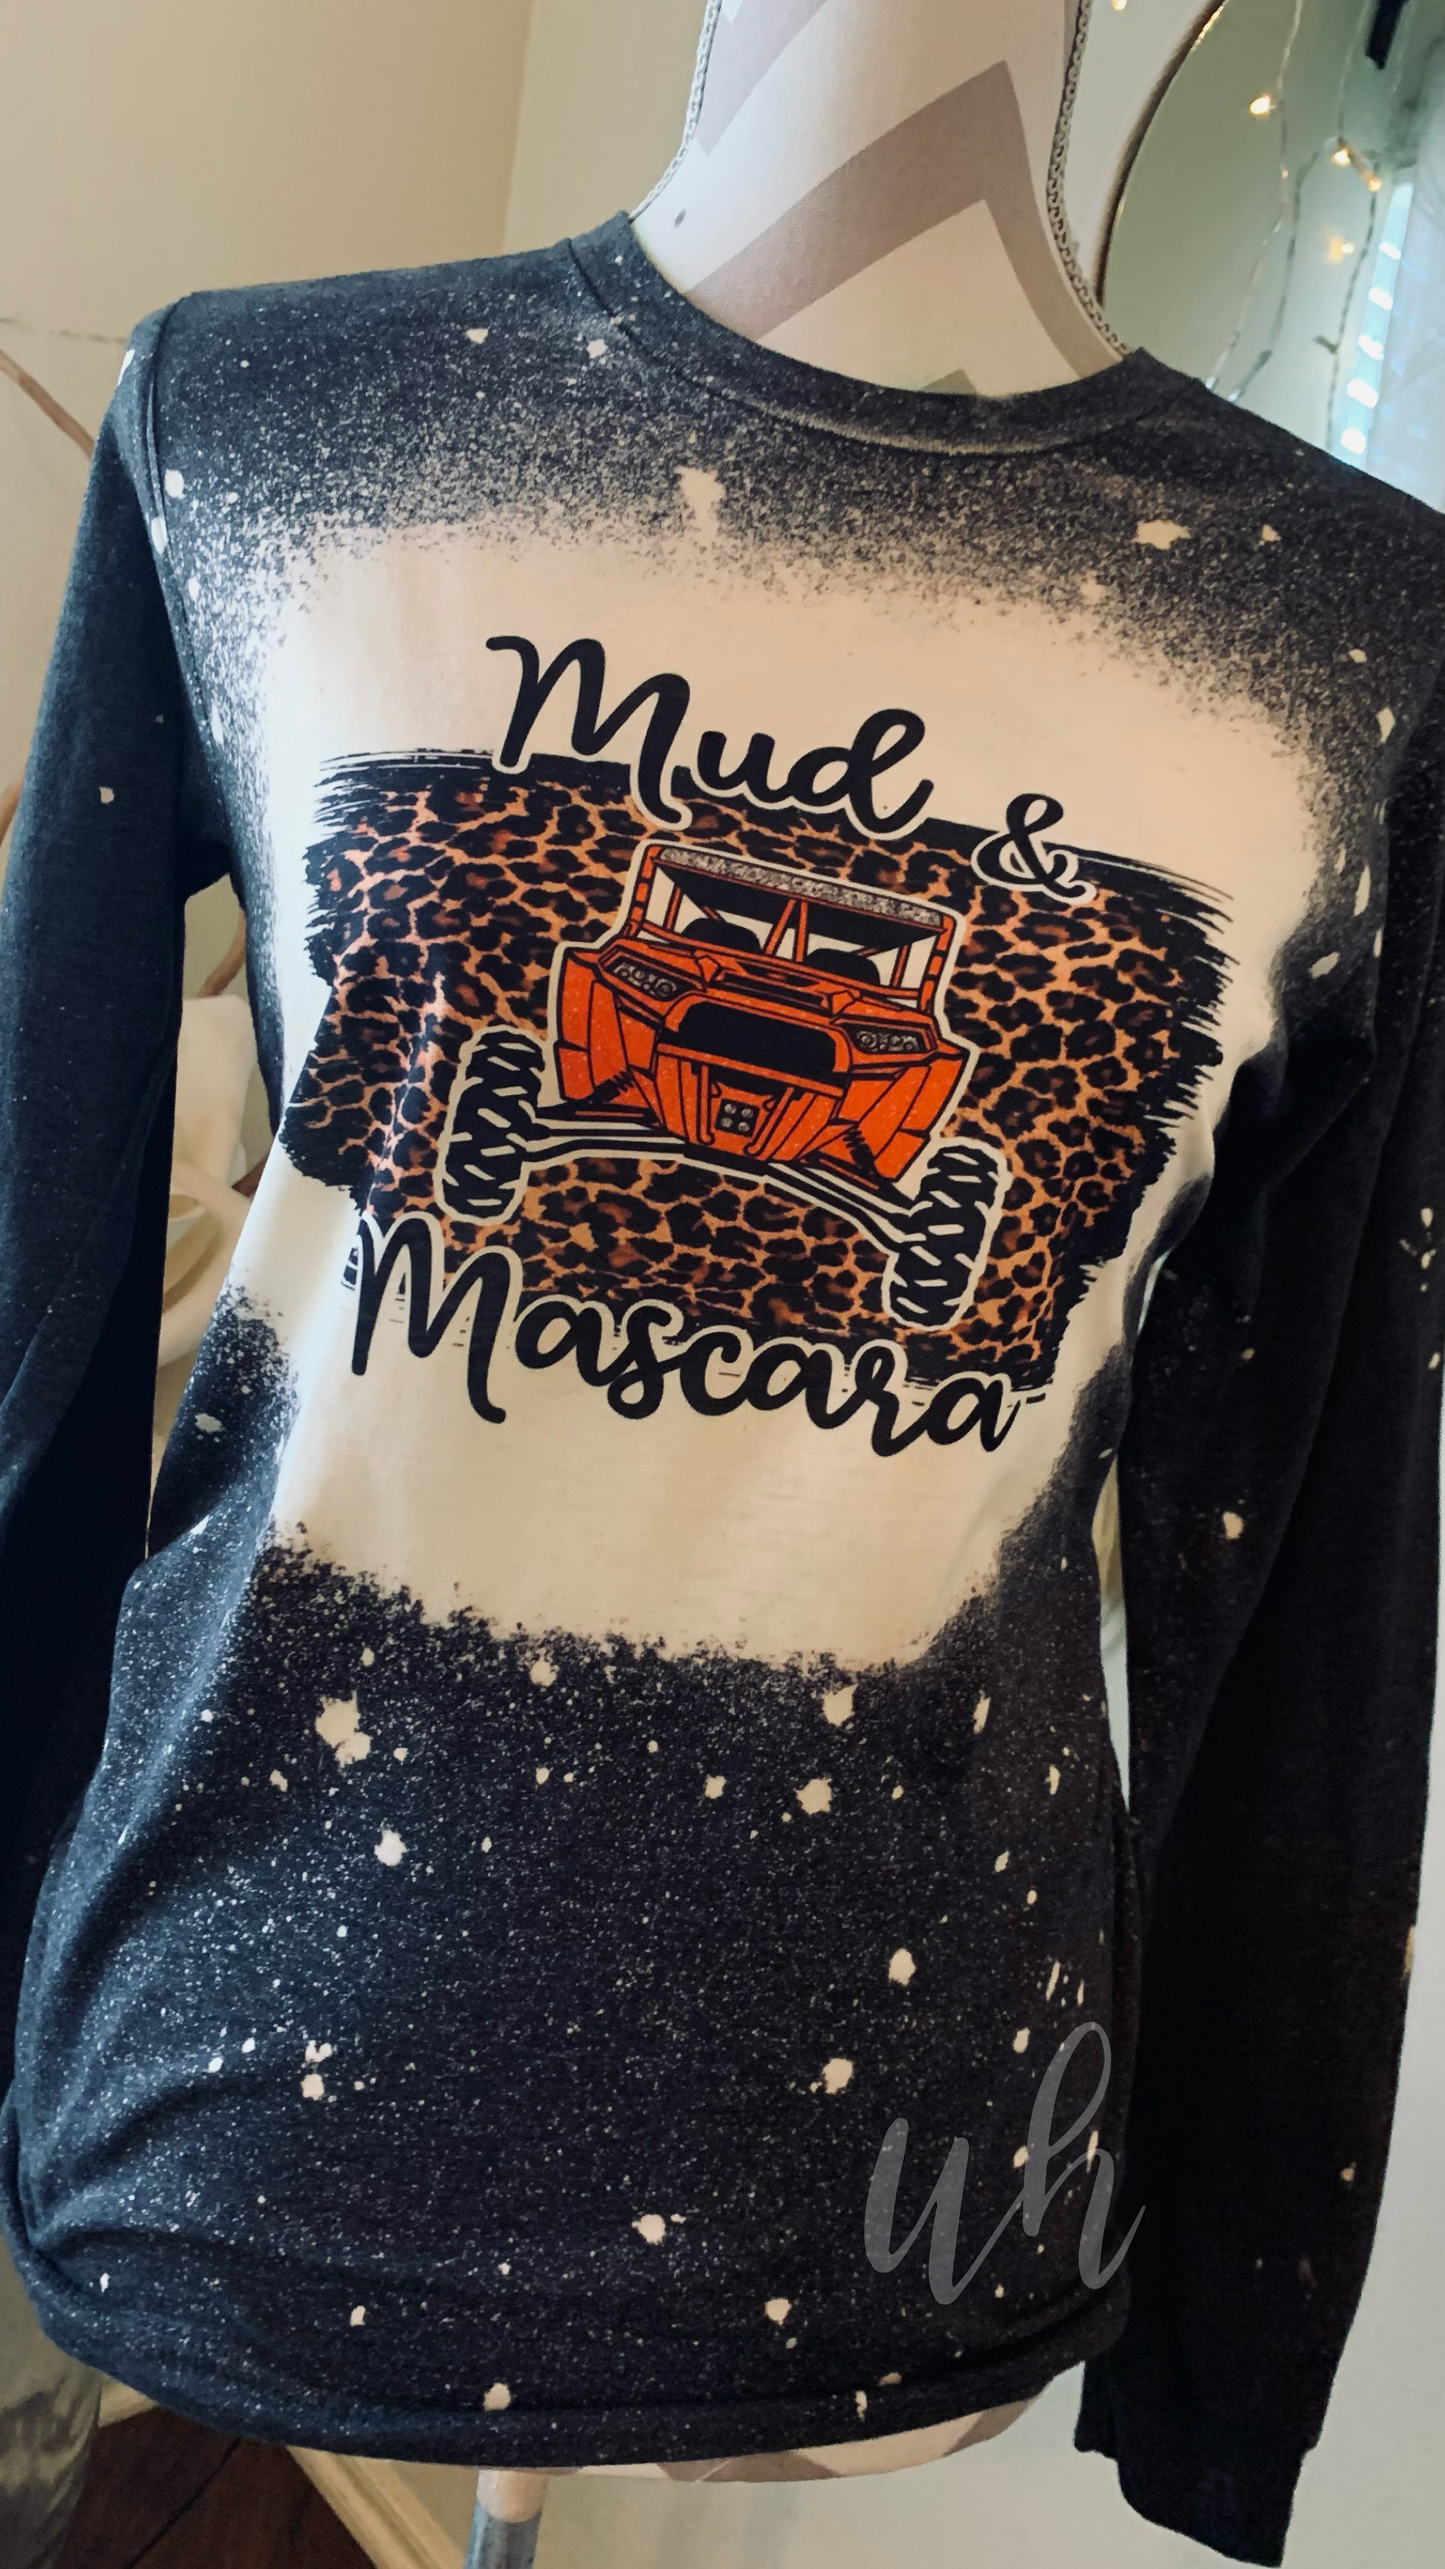 Mud & Mascara ~ Long-sleeve•Sweatshirt•Tee